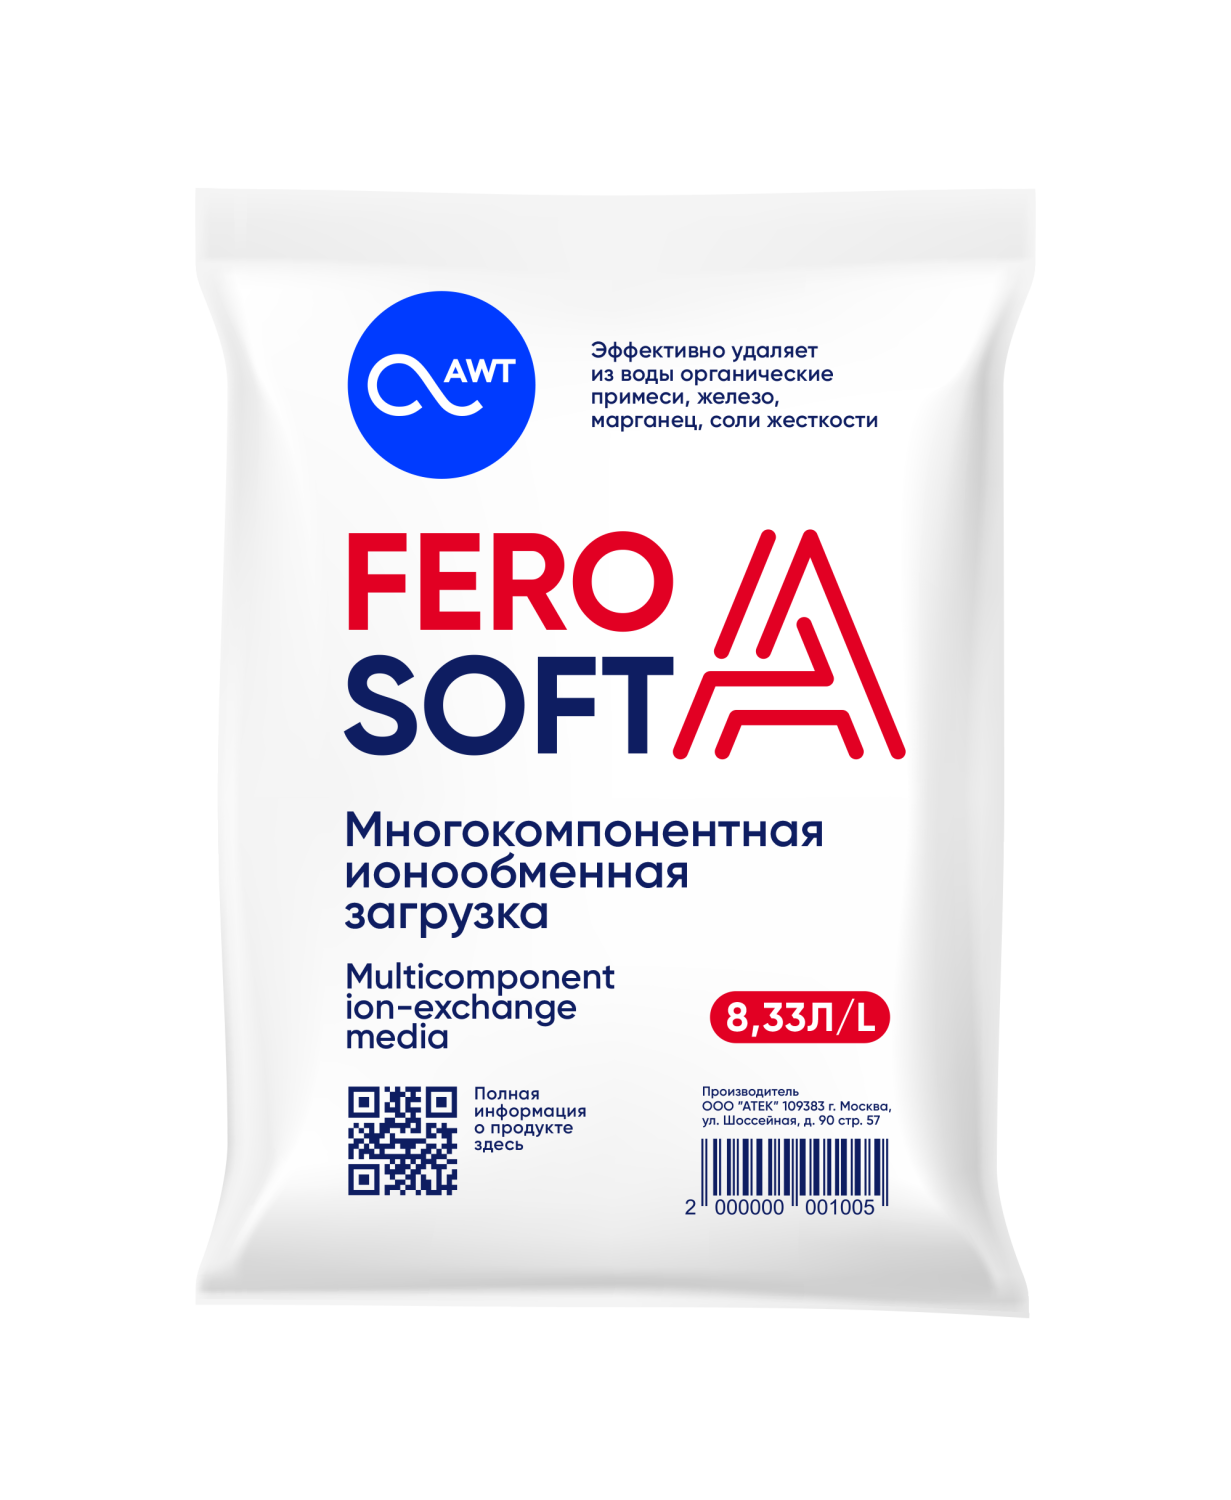 FeroSoft-А (8,33л. 6,3 кг) многокомпанентная загрузка